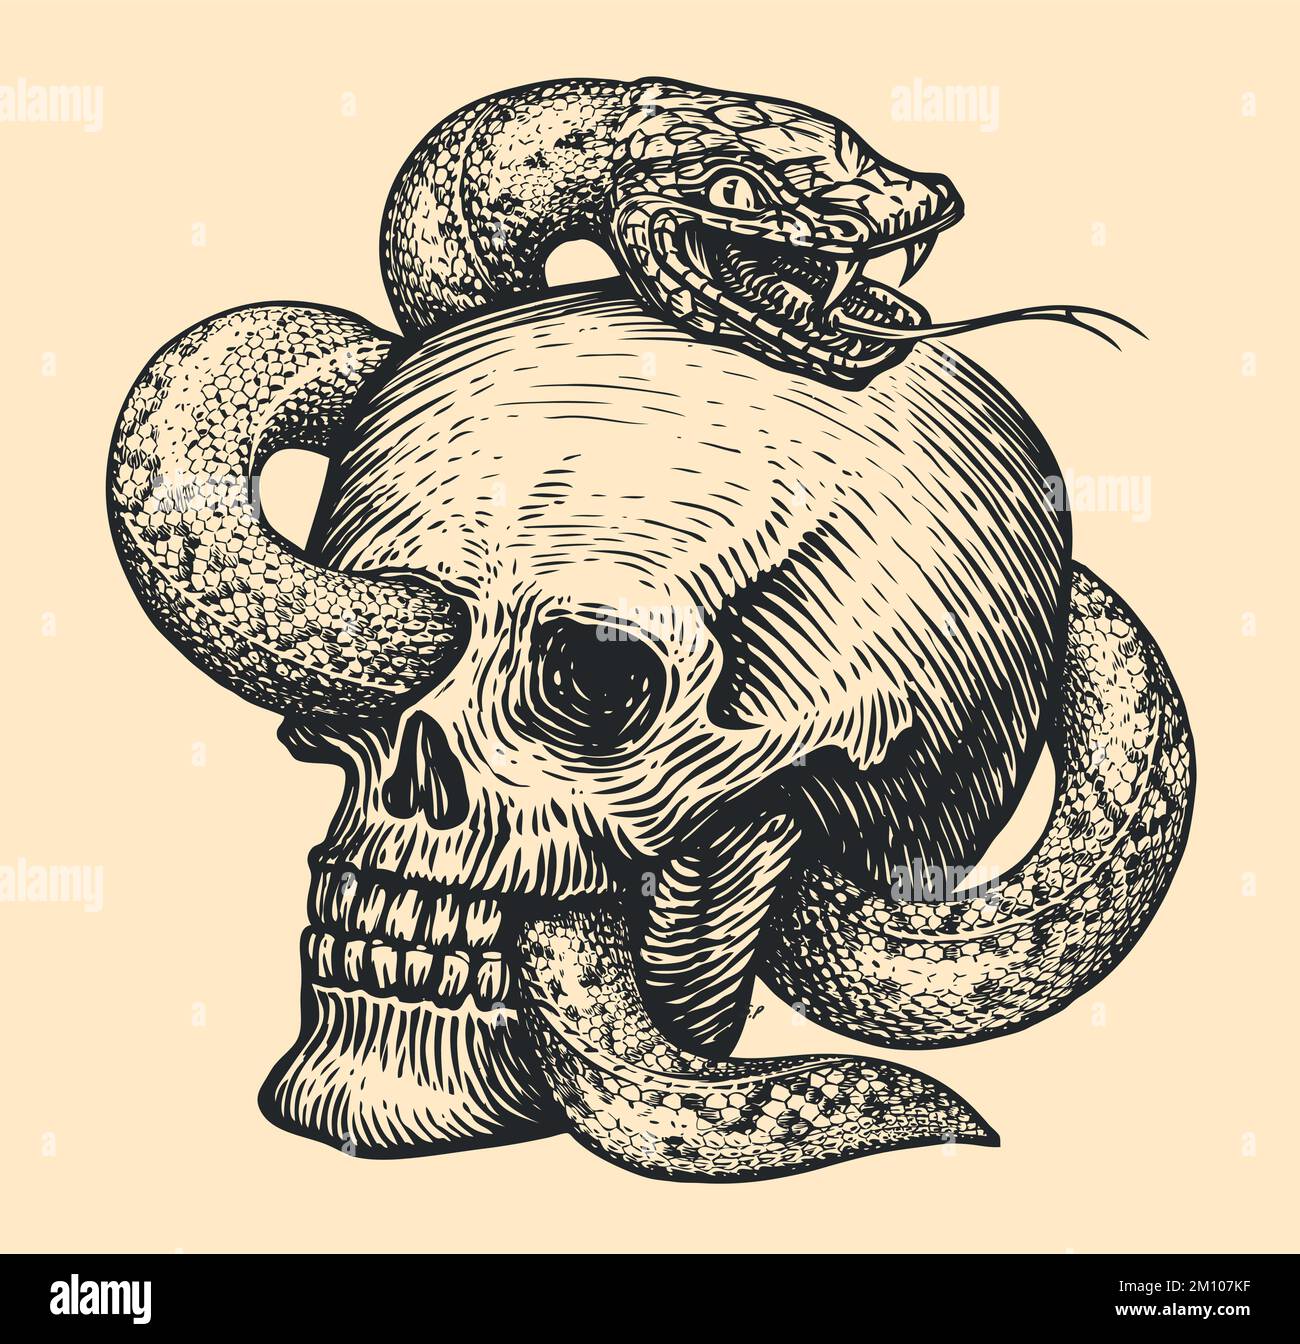 Serpente velenoso avvolge un cranio umano. Disegno disegnato a mano in stile vintage. Illustrazione vettoriale del tatuaggio Illustrazione Vettoriale